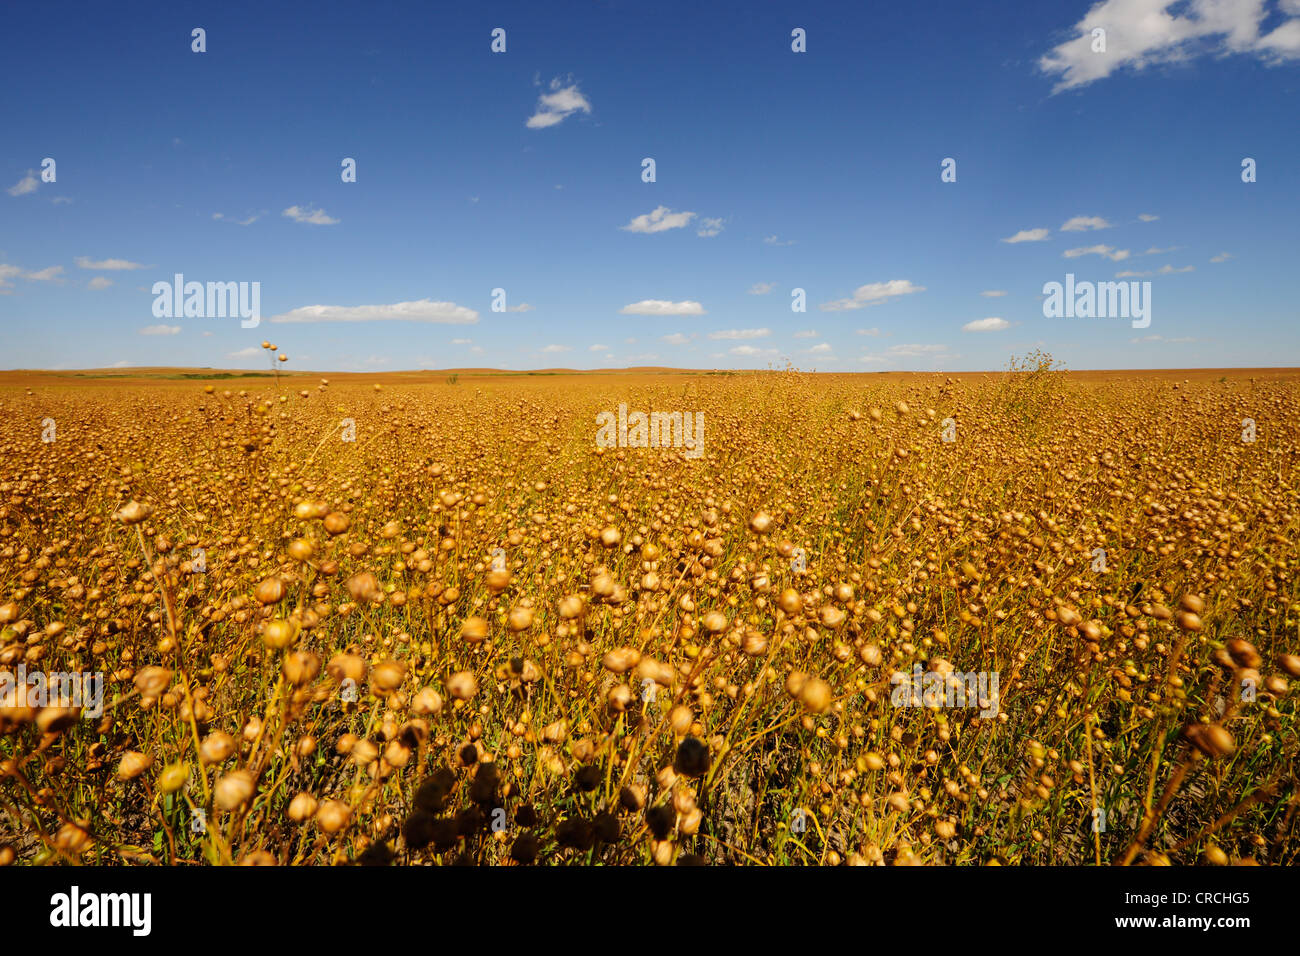 Pea field, prairie, Saskatchewan, Canada Stock Photo